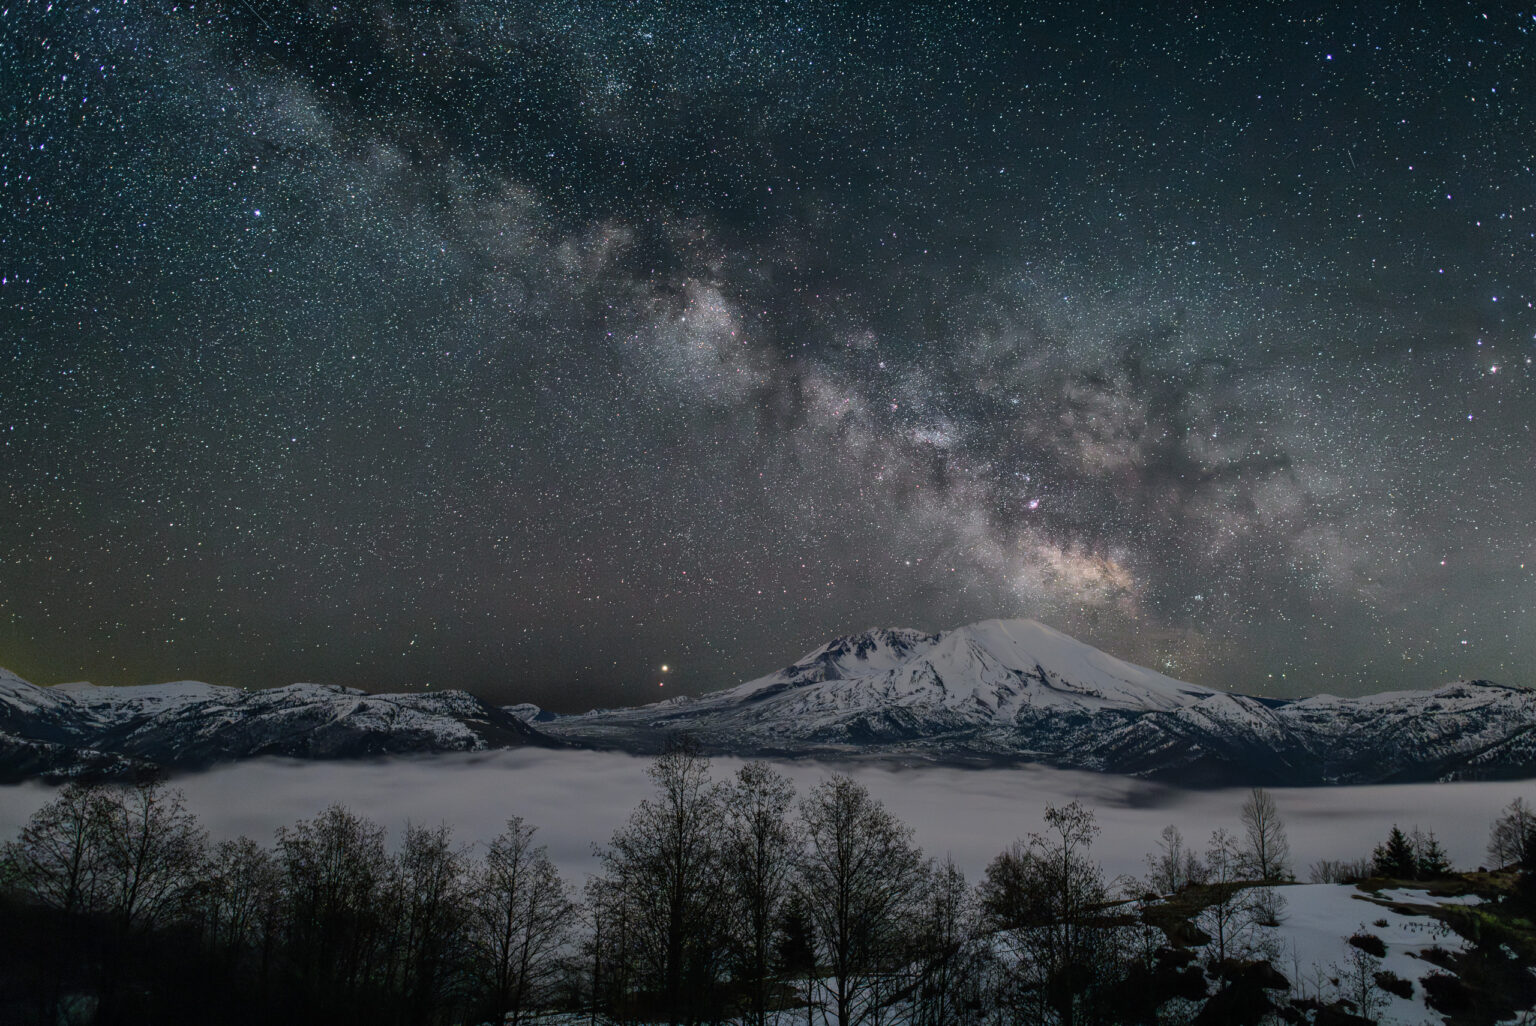 Milky Way over Mount St. Helens